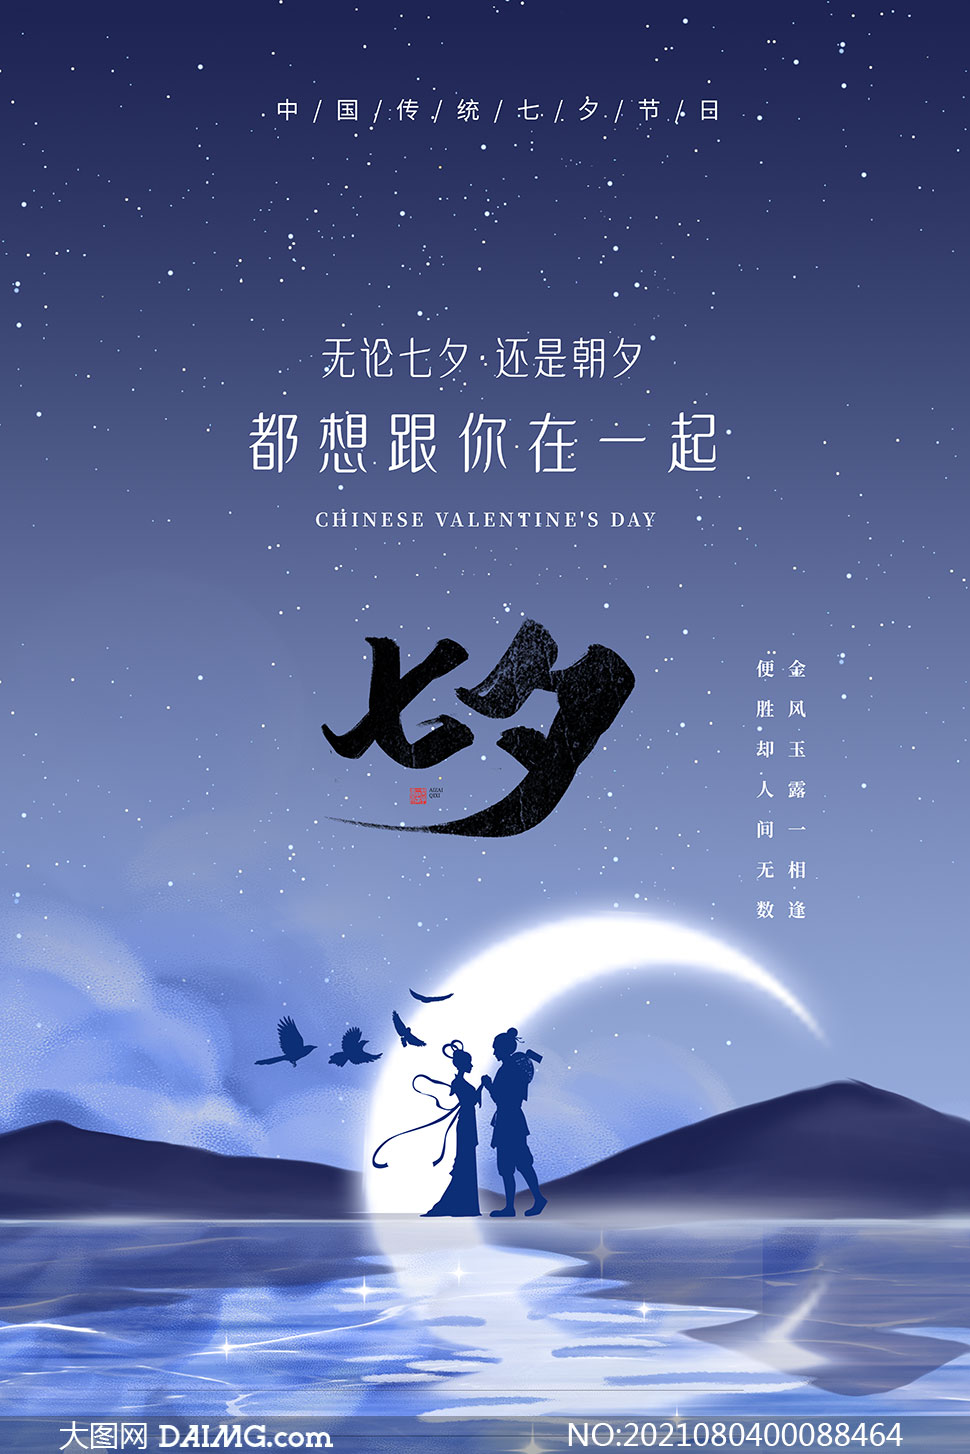 七夕节创意海报设计psd源文件